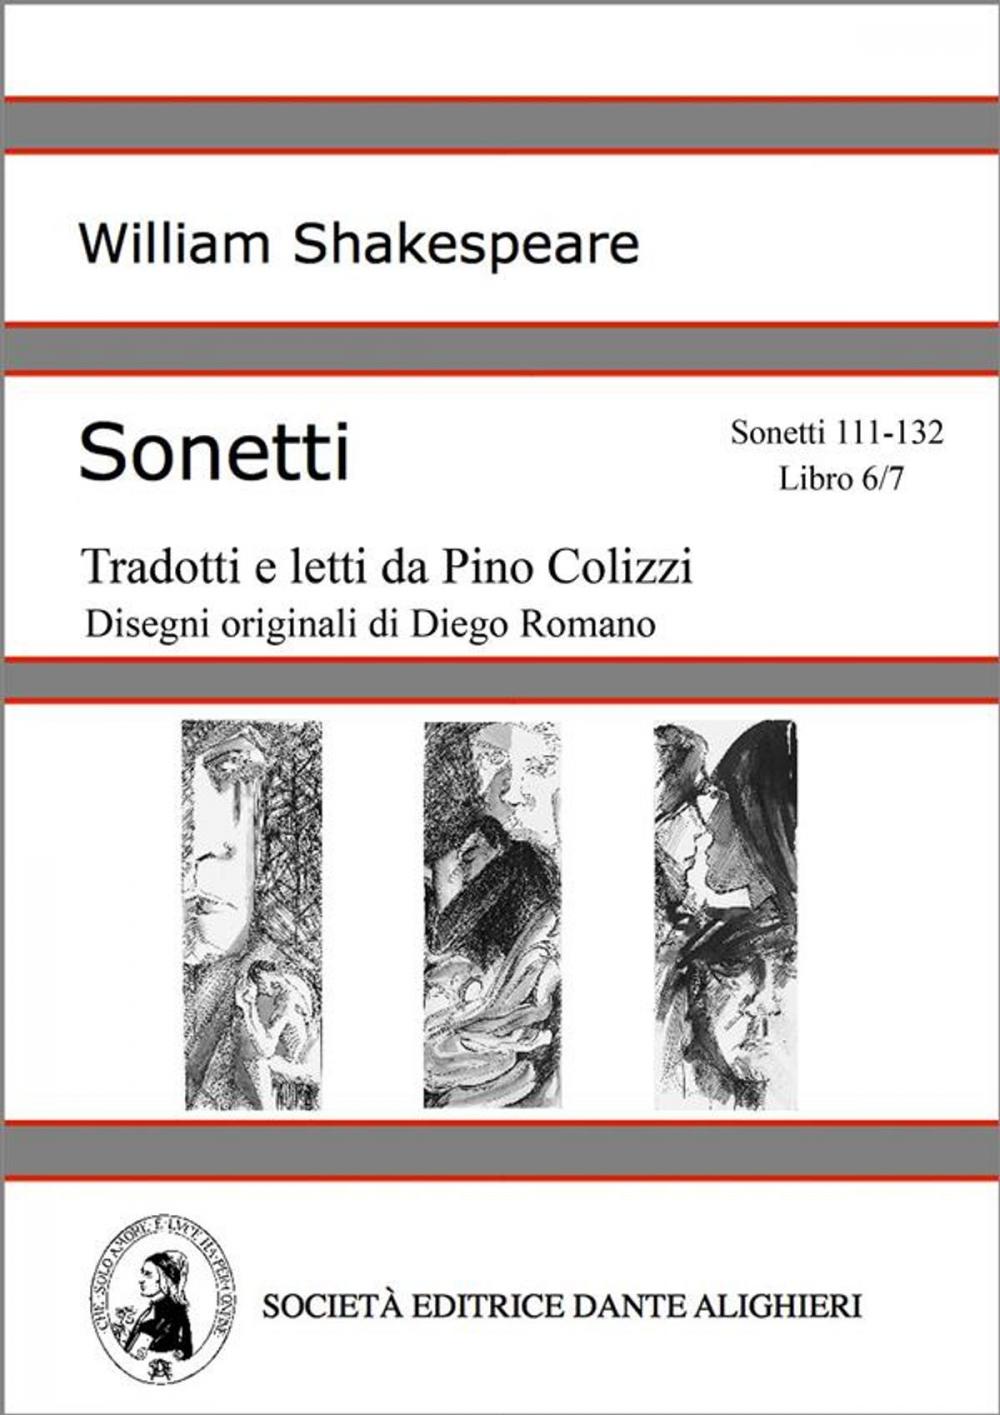 Big bigCover of Sonetti - Sonetti 111-132 Libro 6/7 (versione PC o MAC)